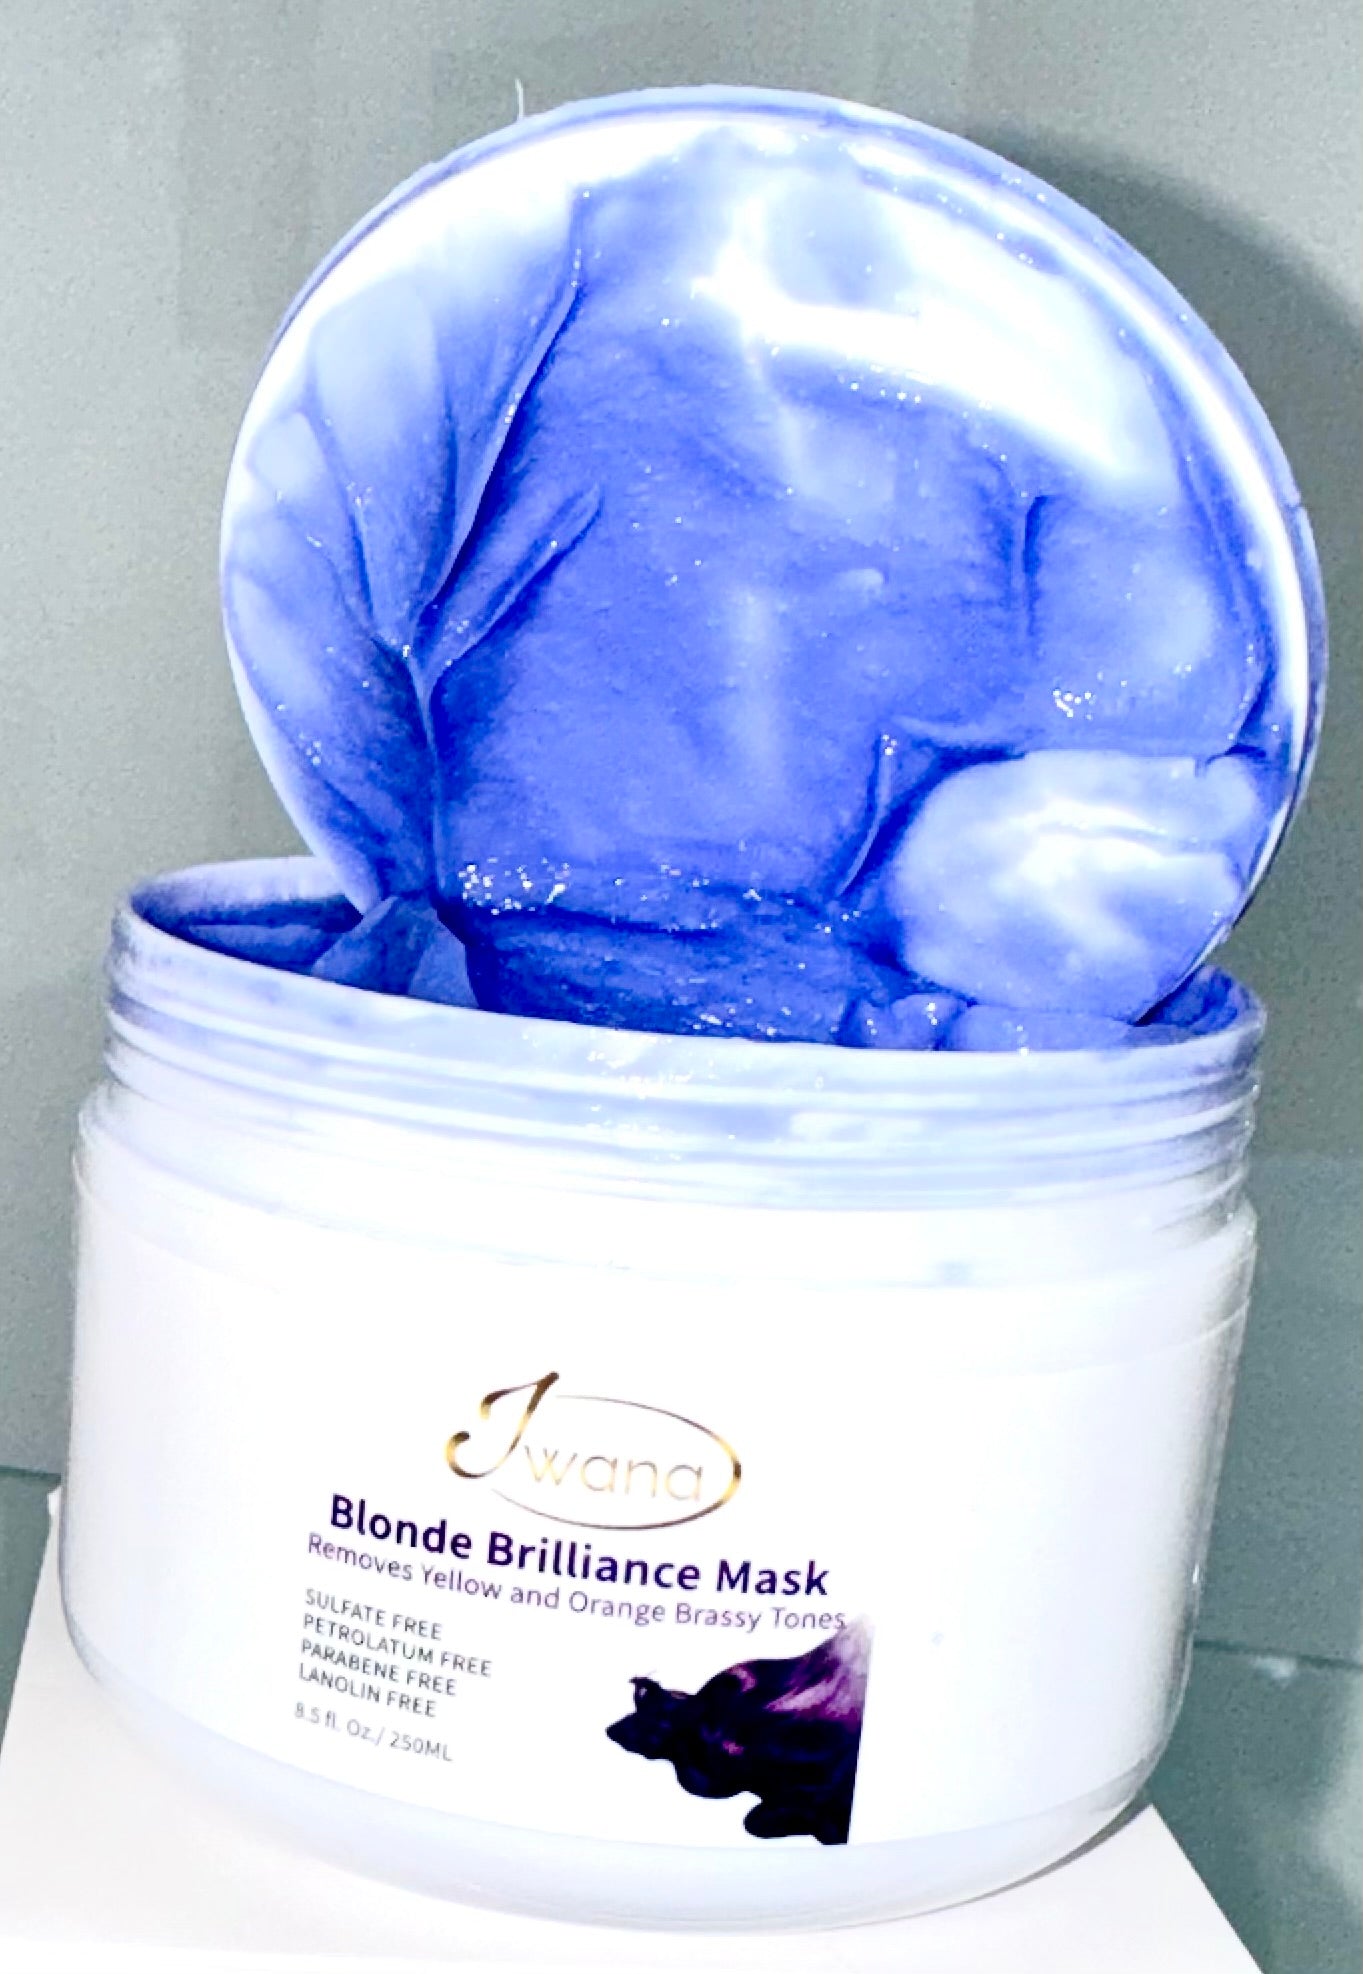 Blonde Brilliance Mask